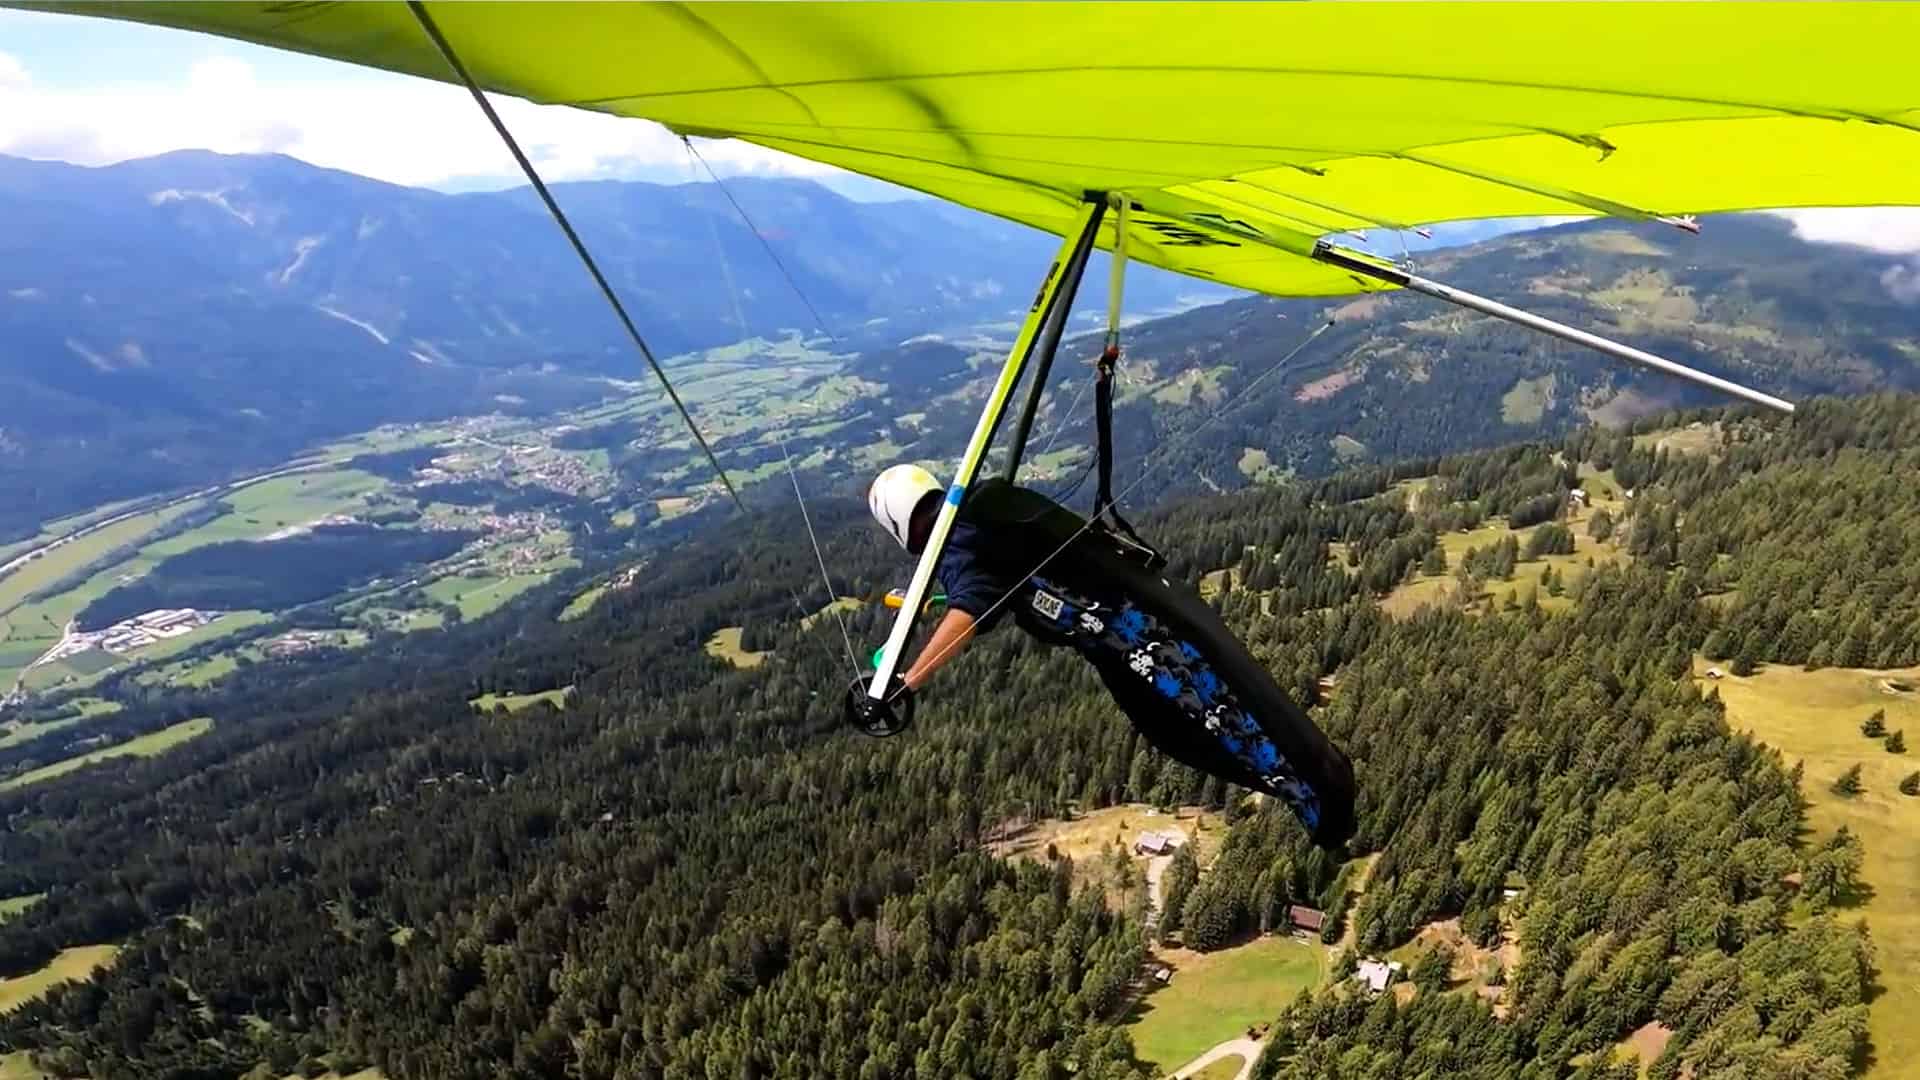 Drachenflieger in der Luft - Emberger Alm Kärnten